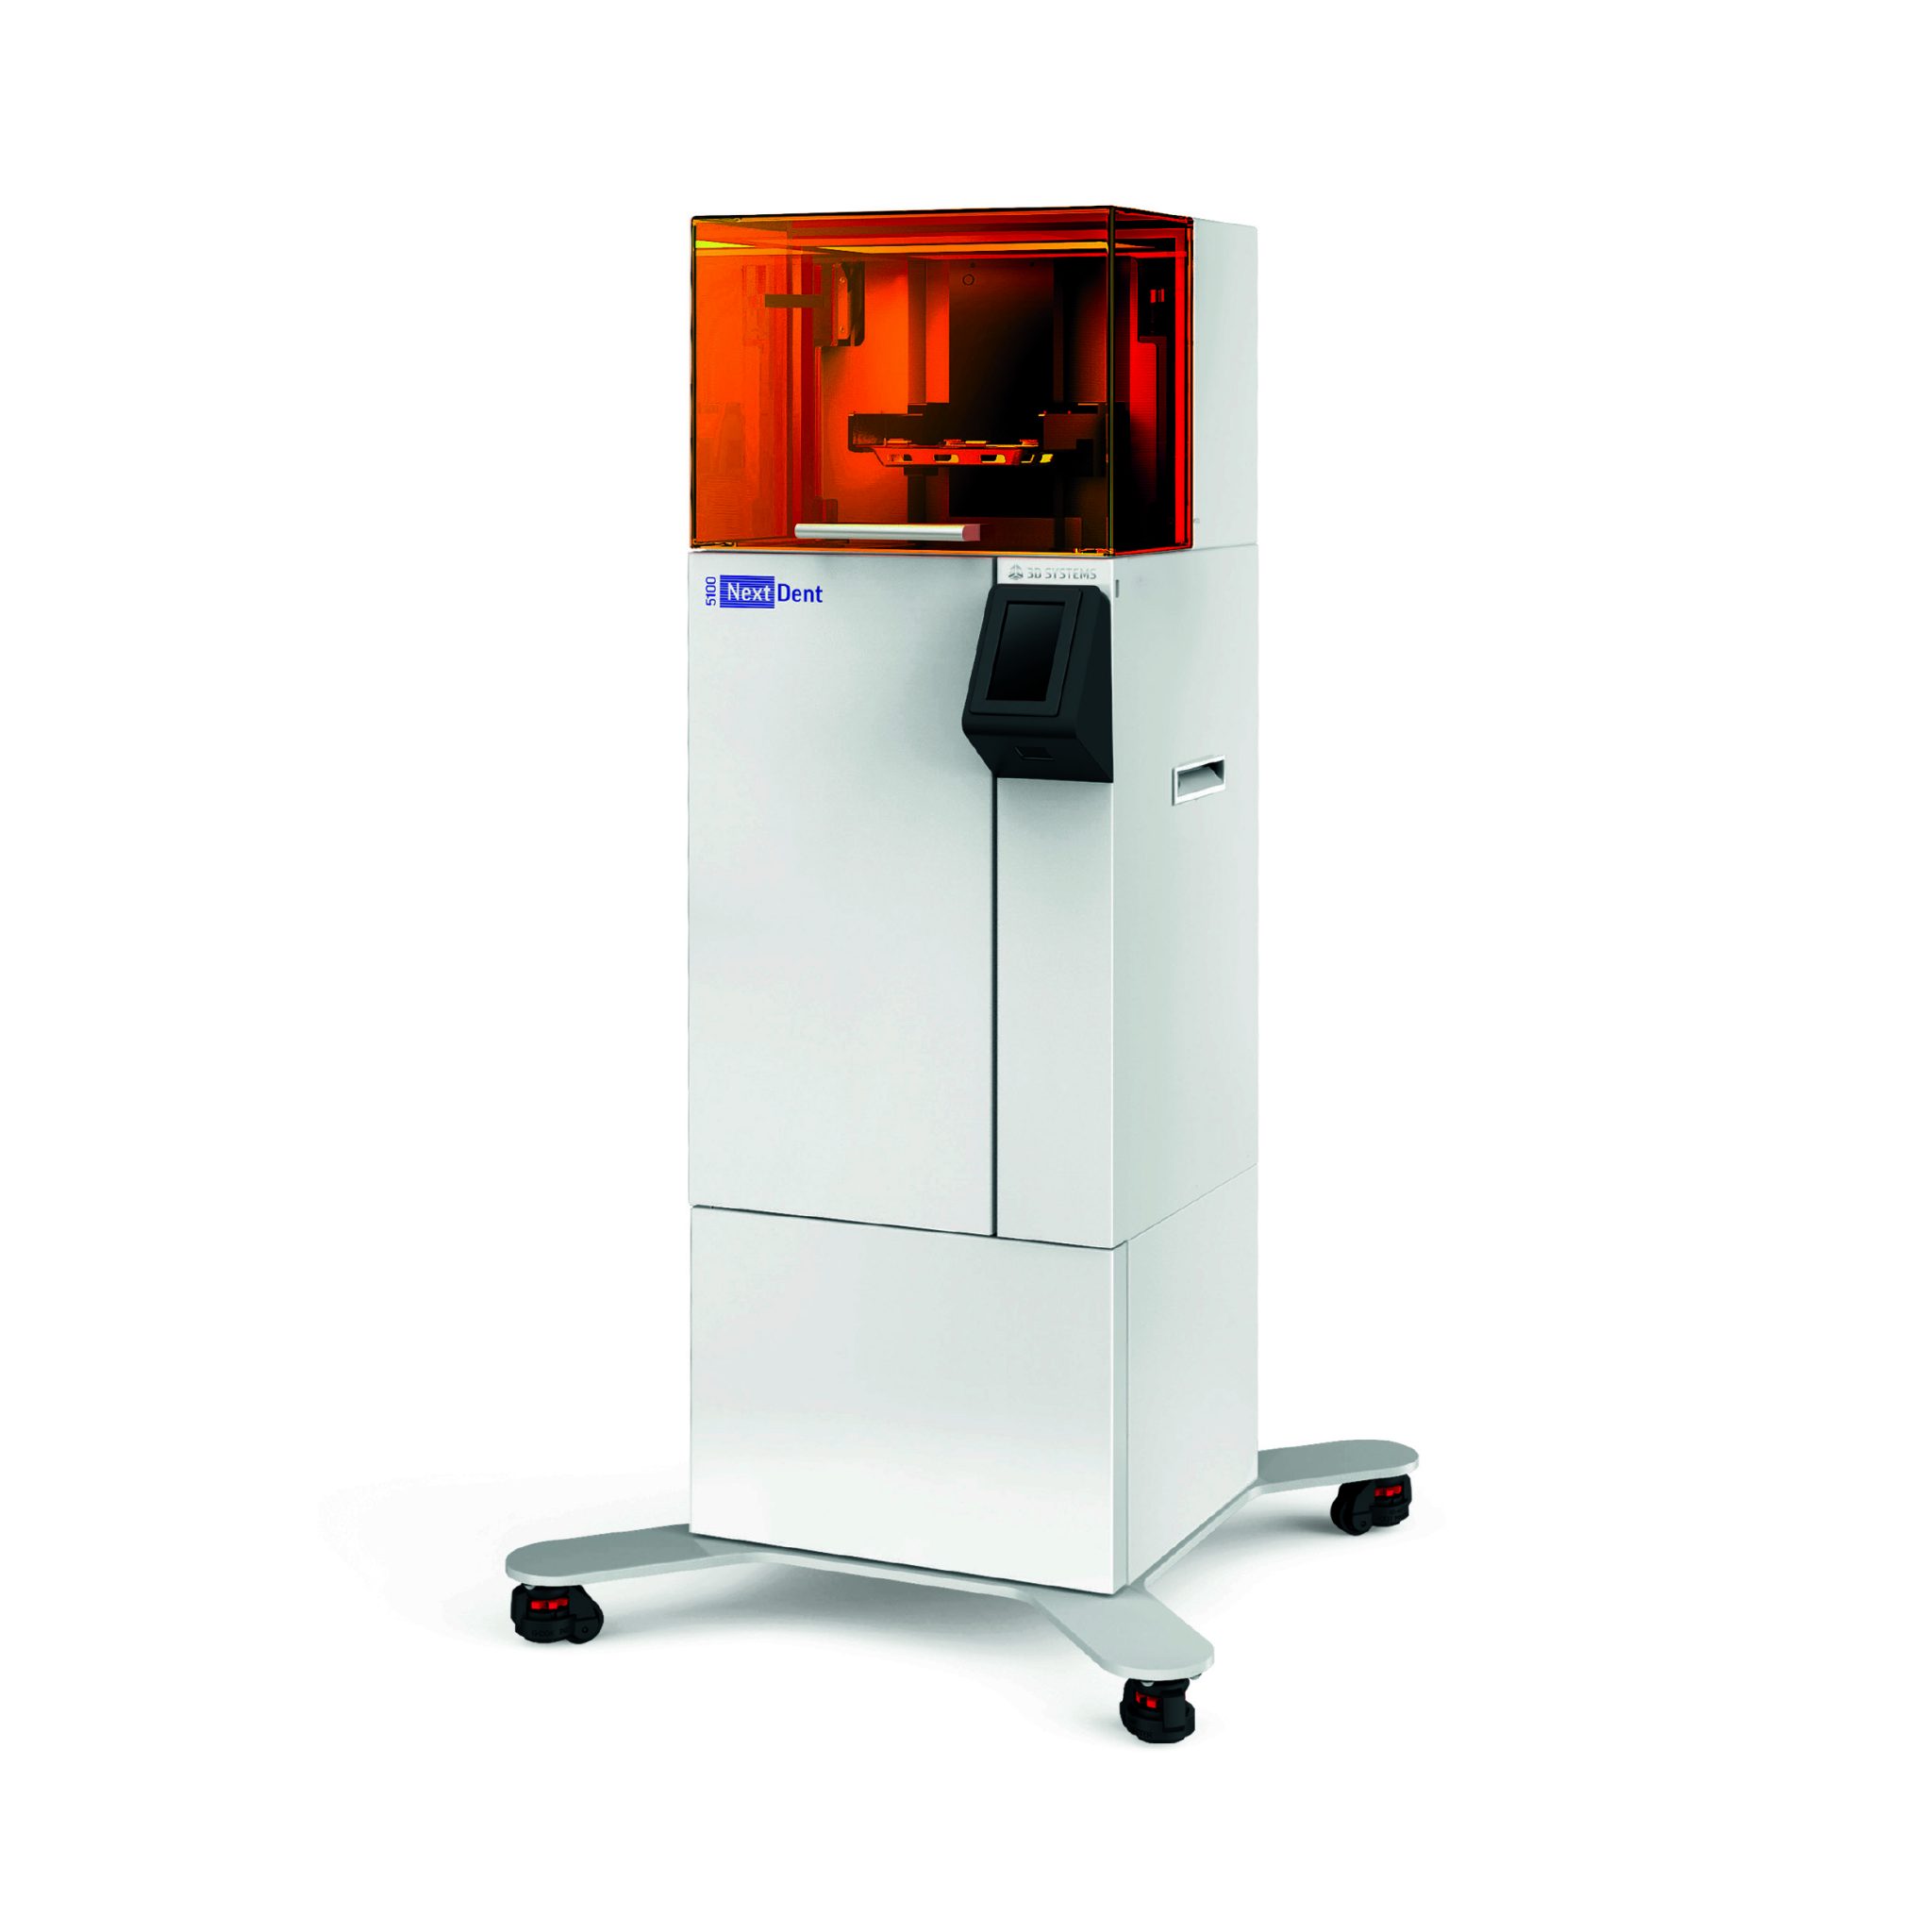 3D Systems NextDent 5100 Dental 3D打印机。通过3D系统照片。